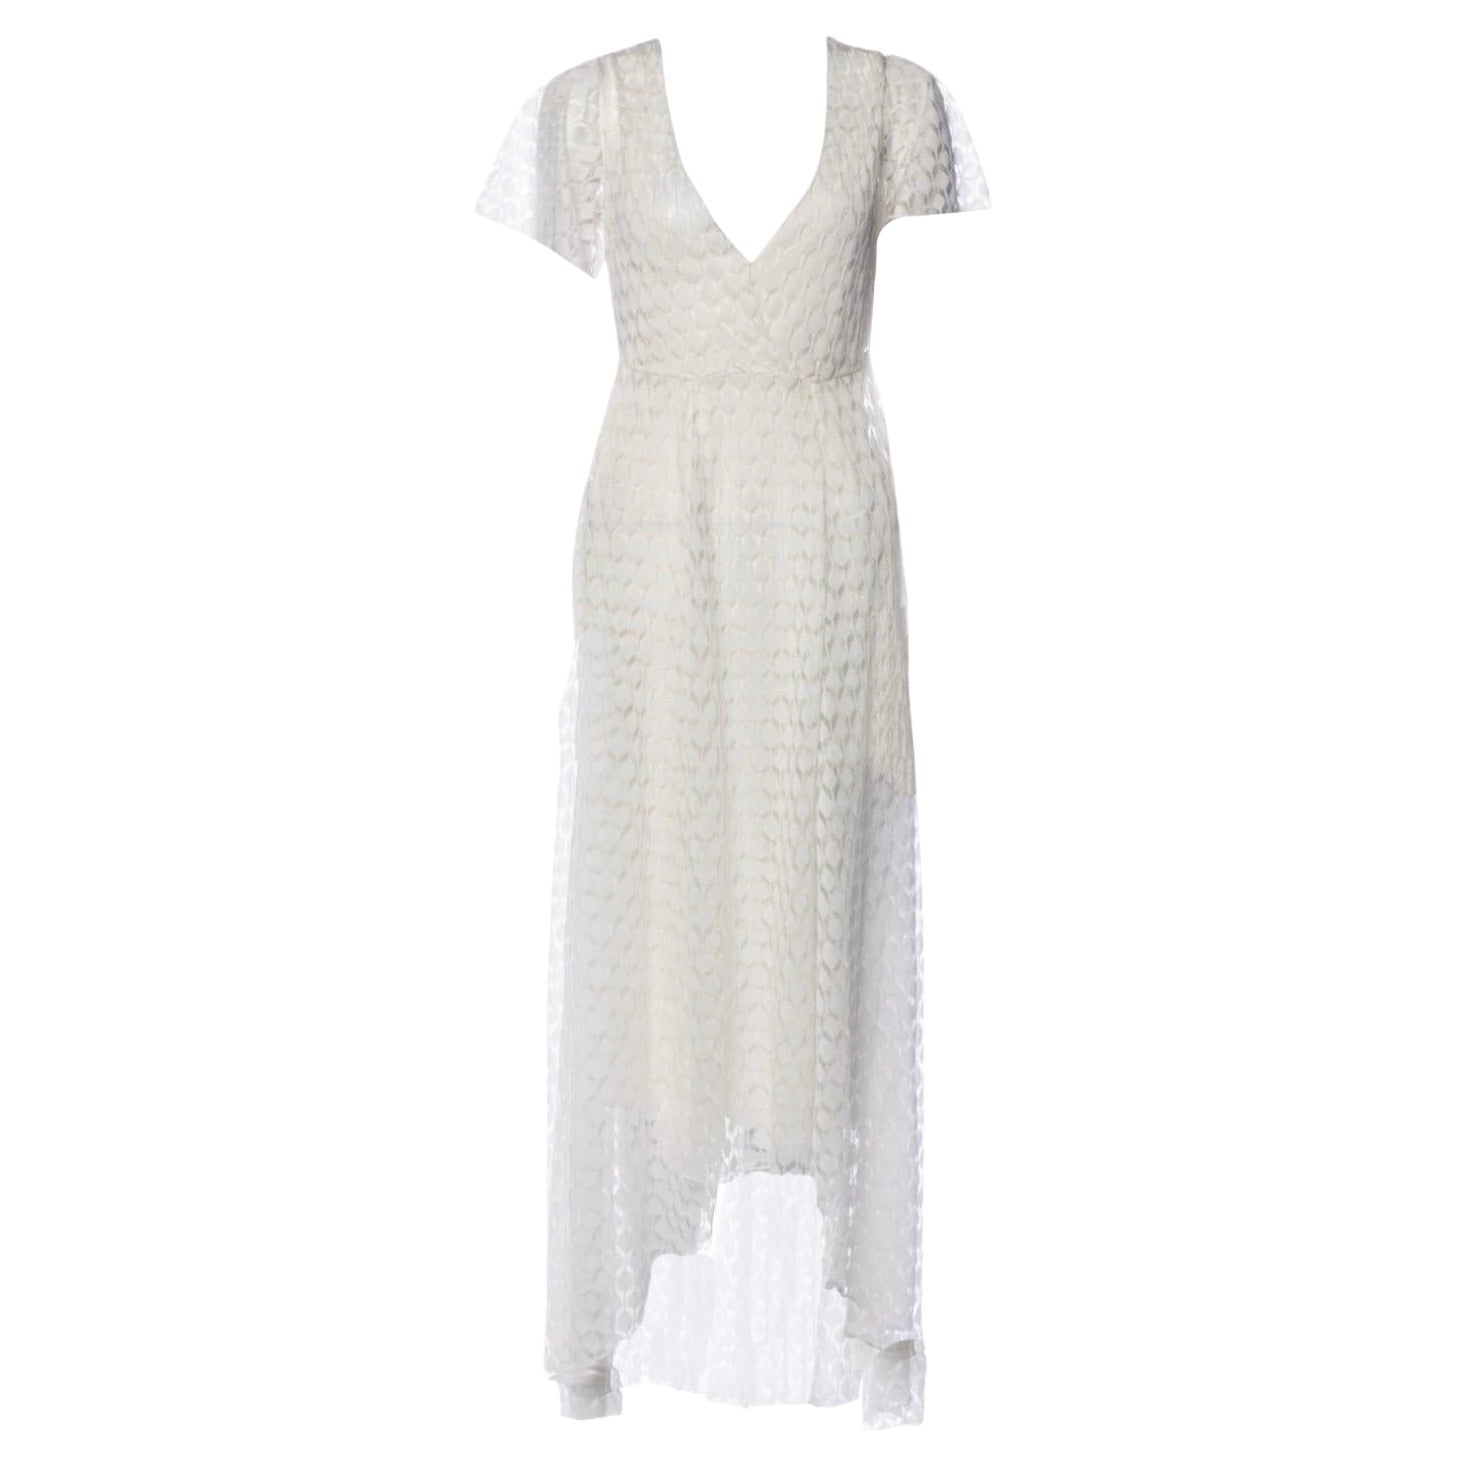 UNWORN Missoni 2PCS Crochet Knit Lace Bridal Wedding Engegement Dress 38 For Sale